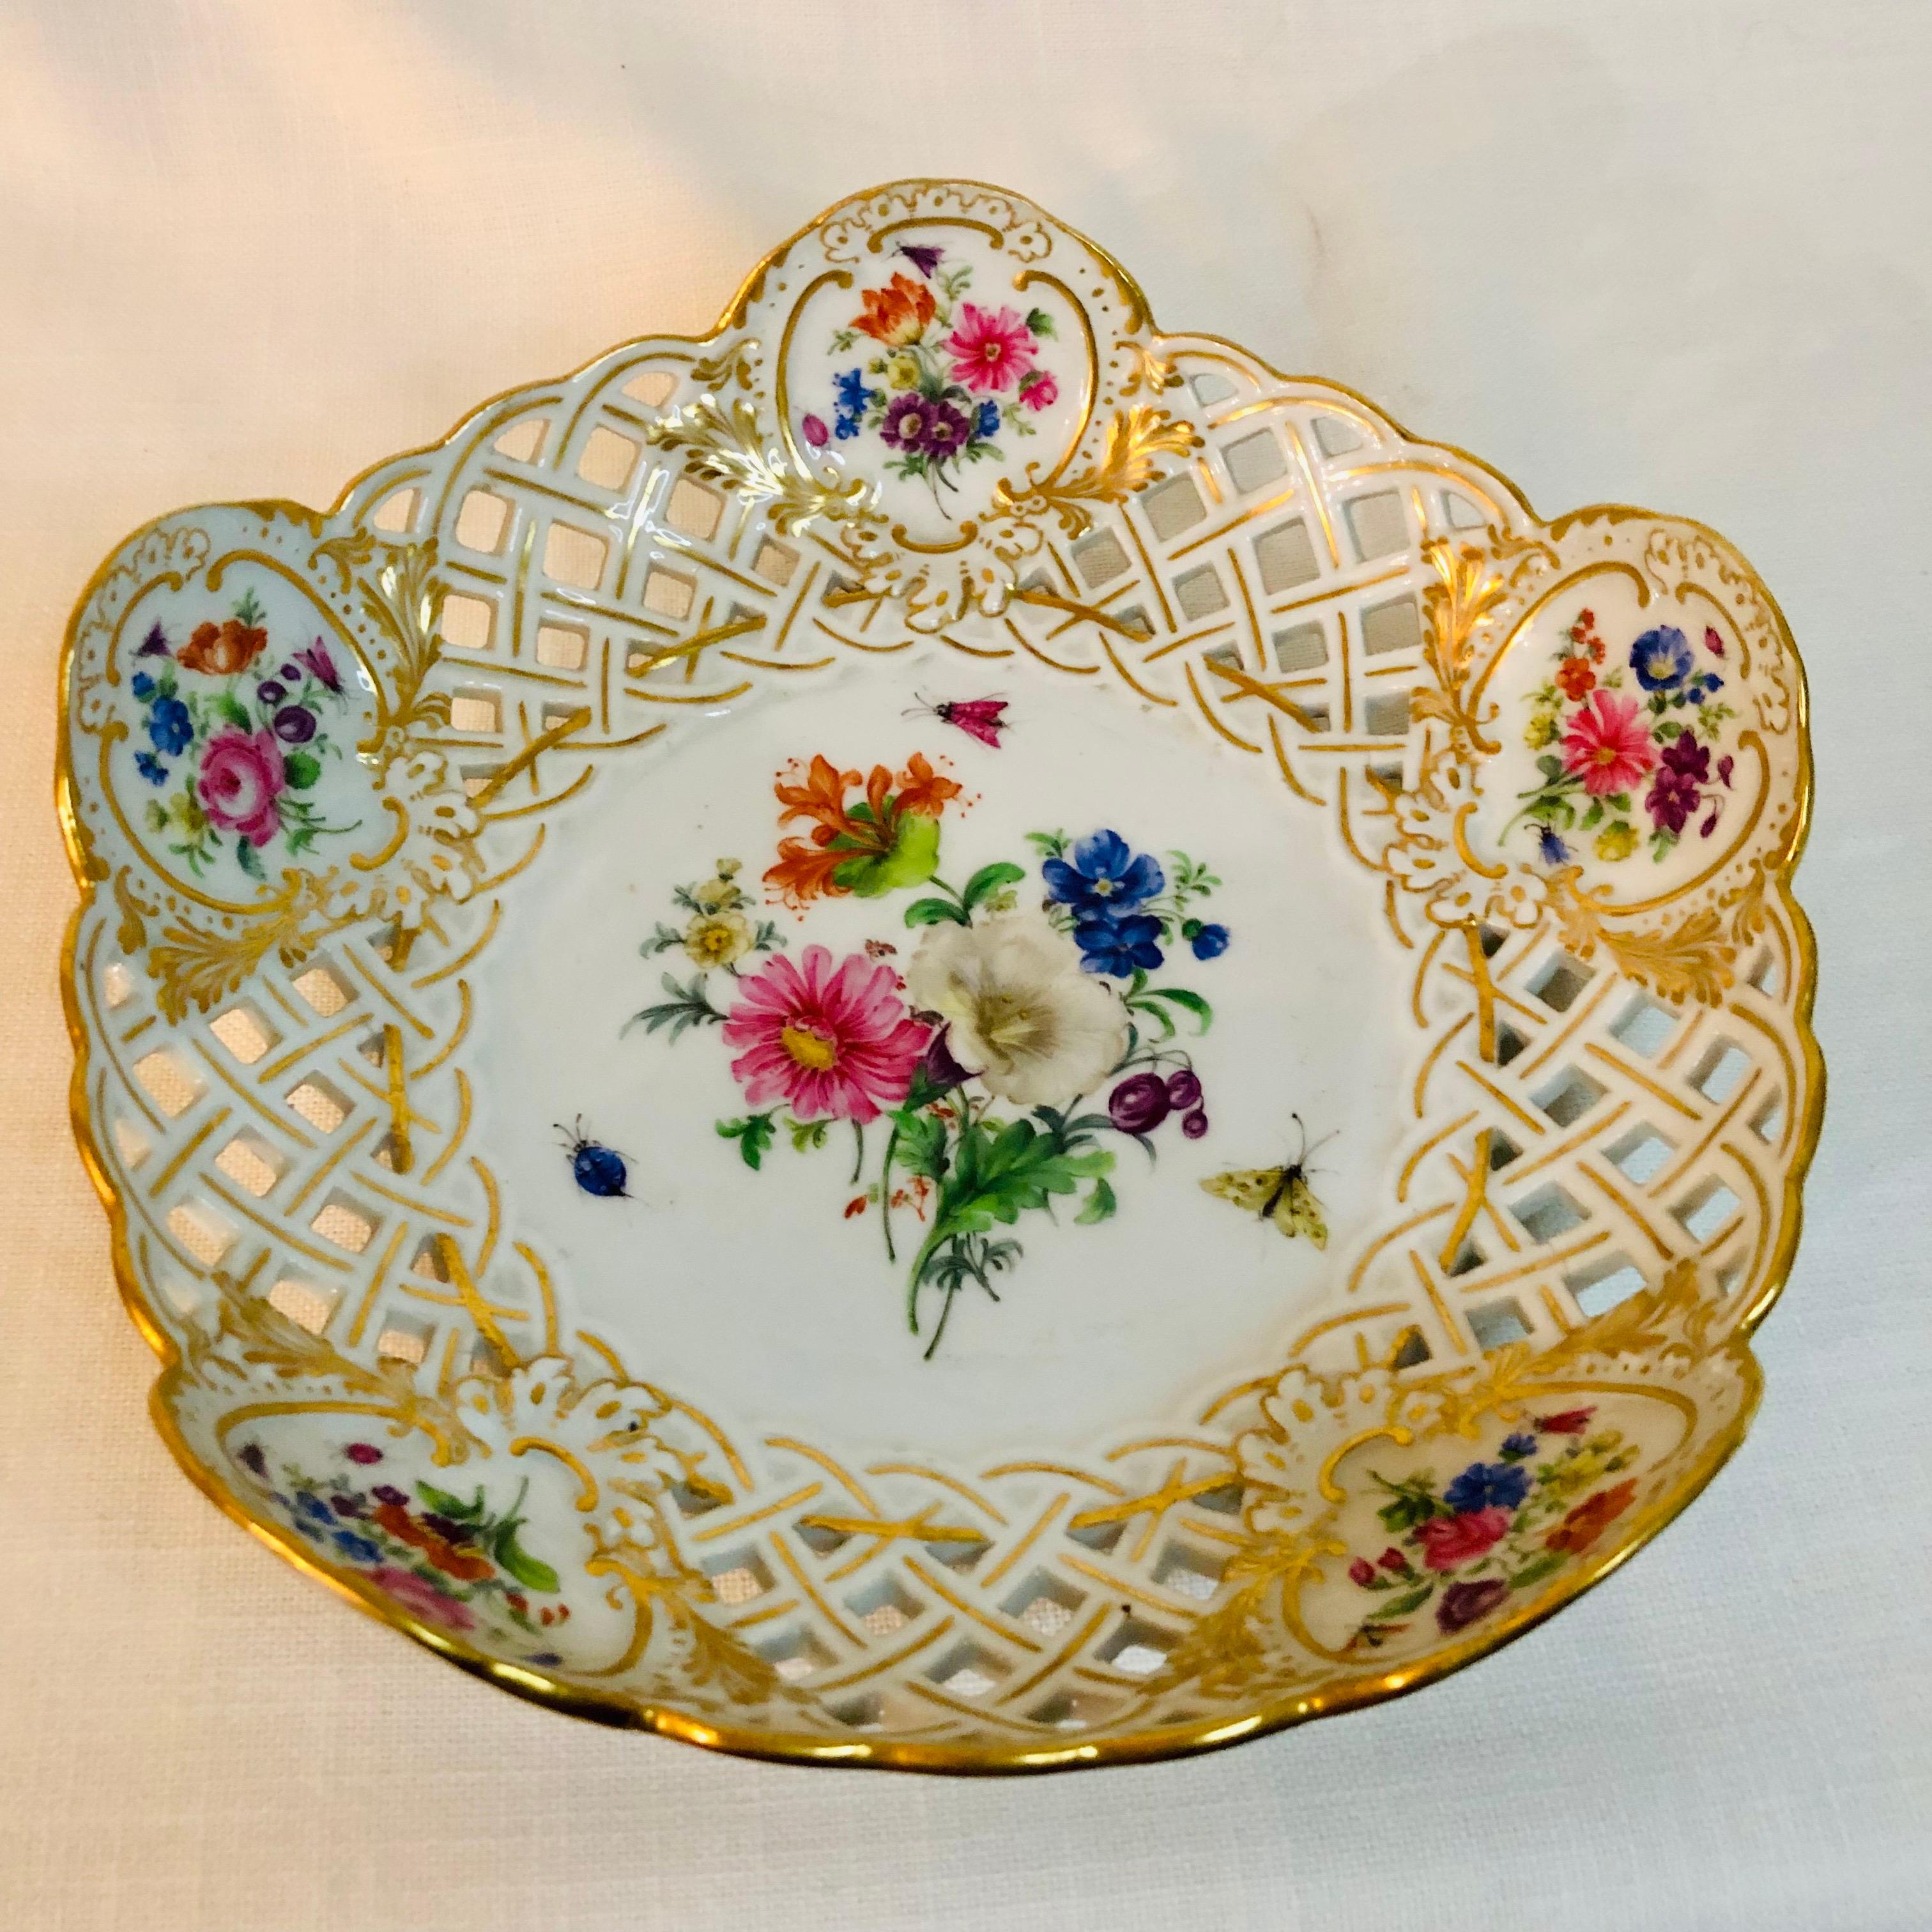 Ich biete Ihnen diese fabelhafte netzförmig geriffelte Meissener Schale aus den 1880er Jahren an. Sie hat ein wunderschön gemaltes Blumenbouquet in der Mitte mit Akzenten von Insekten auf einem weißen Porzellangrund. Innerhalb der vergoldeten